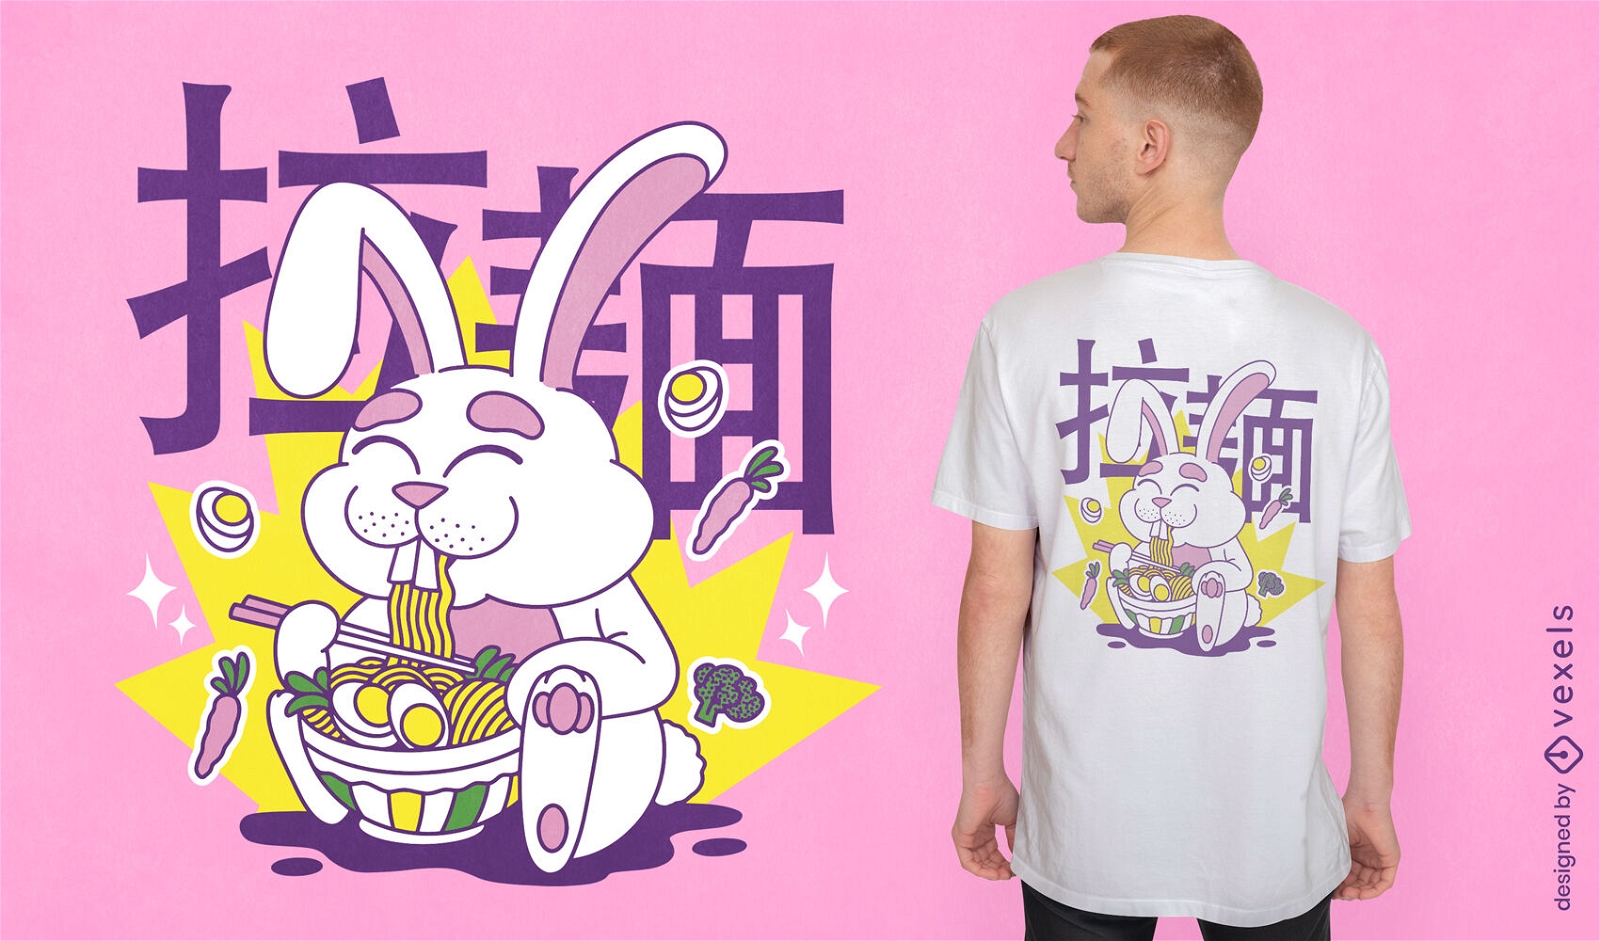 Diseño de camiseta de conejo comiendo ramen.